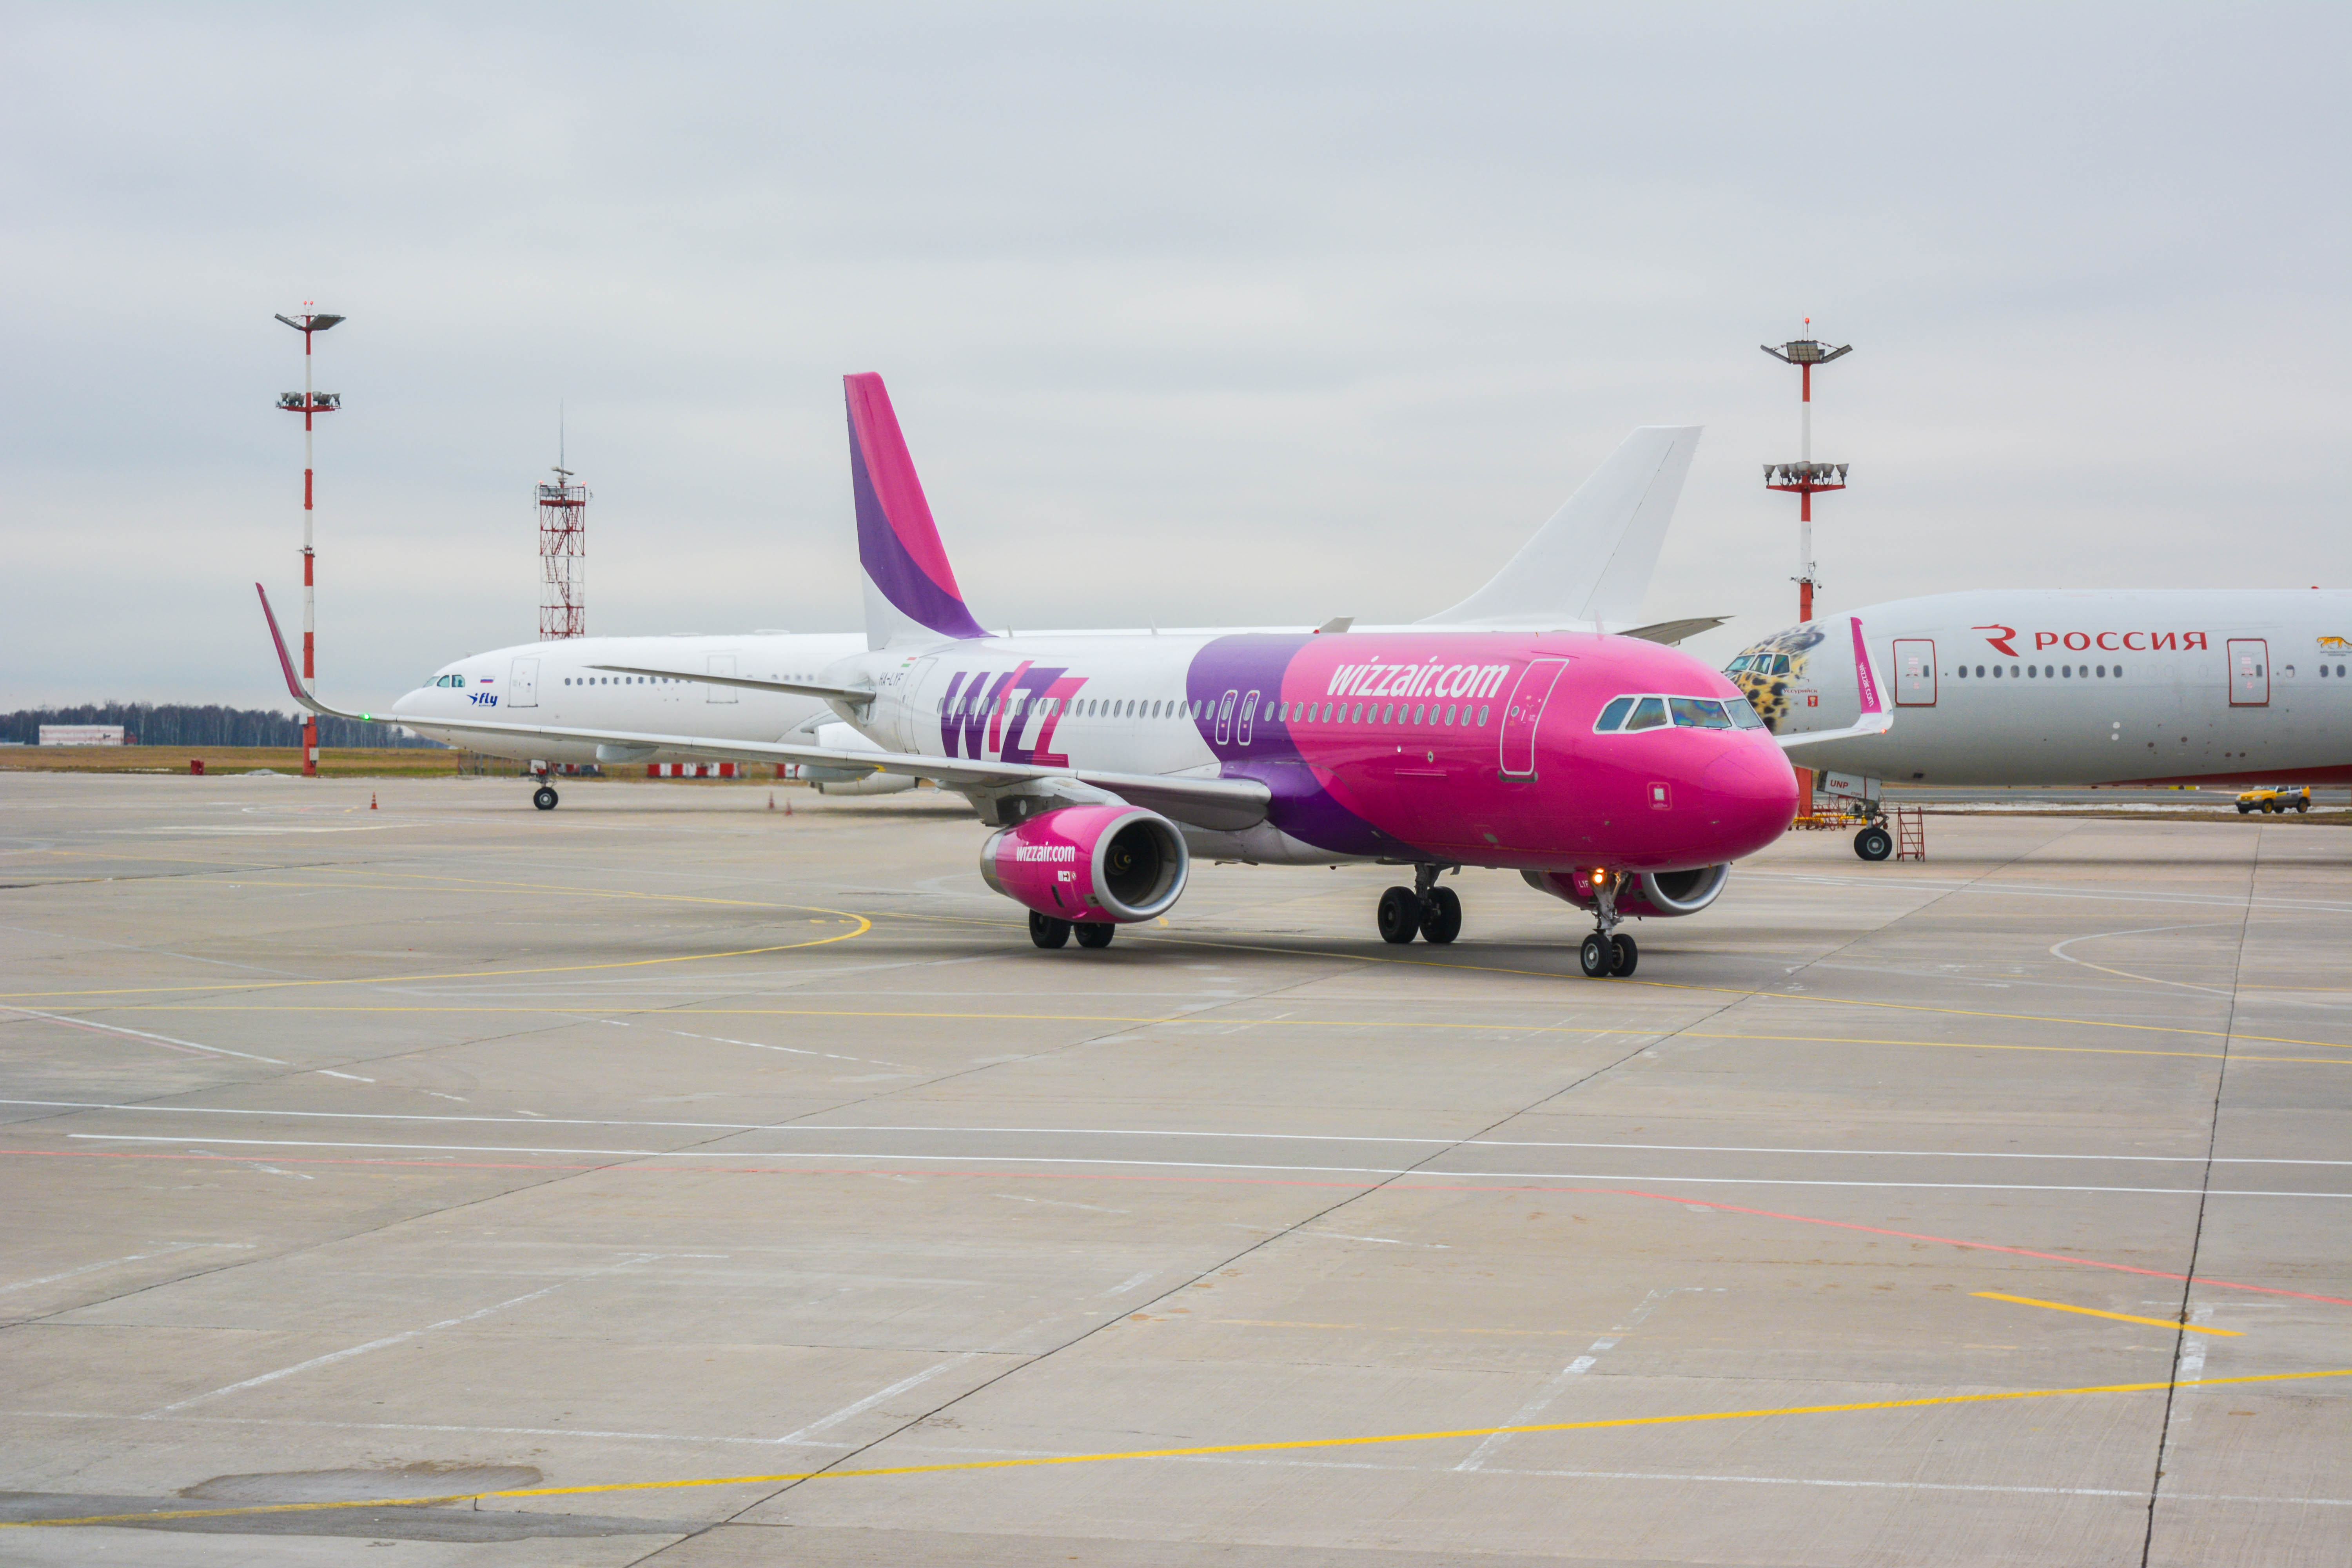 Авиакомпания wizz air (визз эйр) — авиакомпании и авиалинии россии и мира